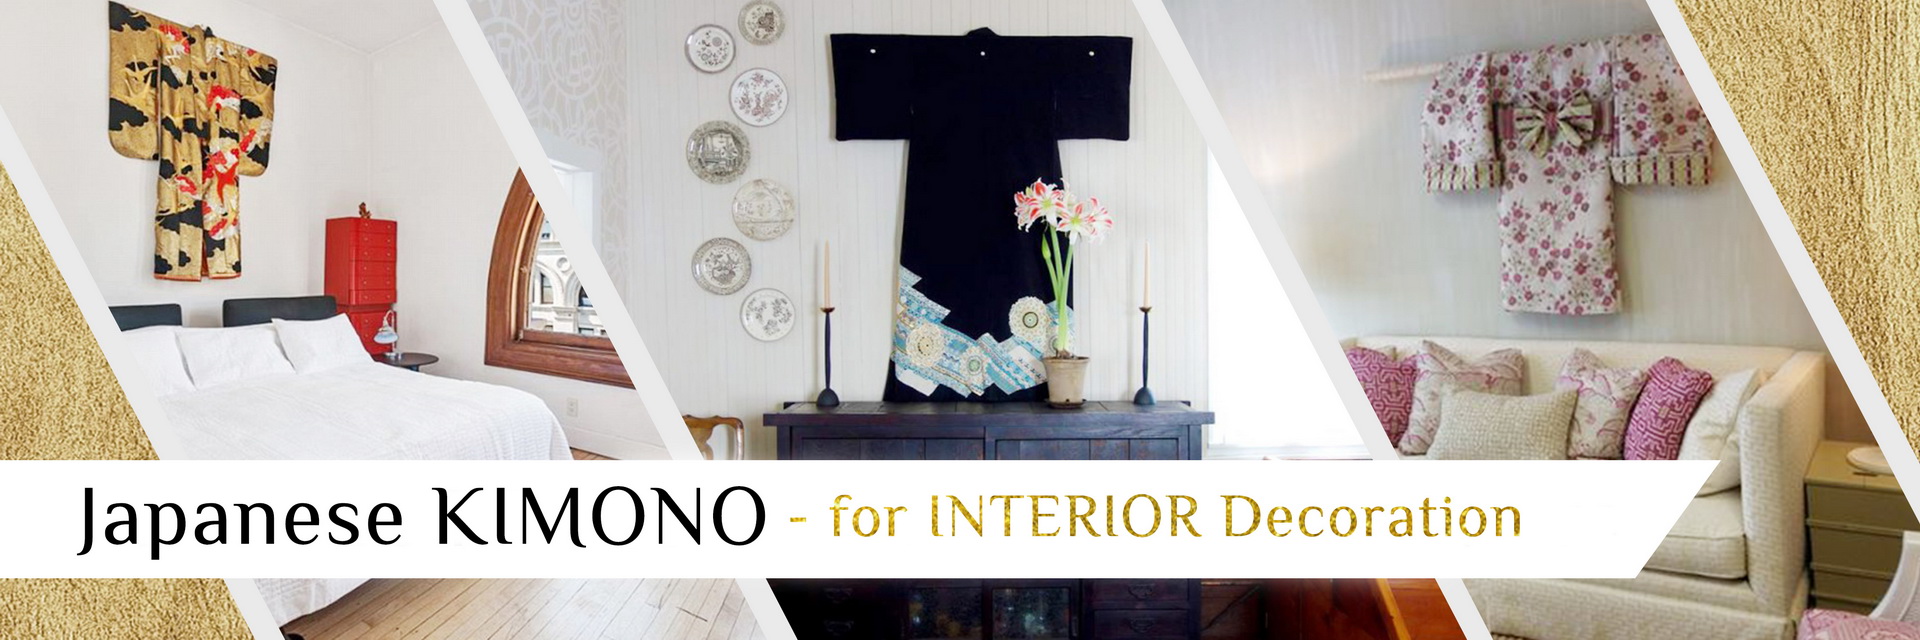 Kimono for Interior Decoration